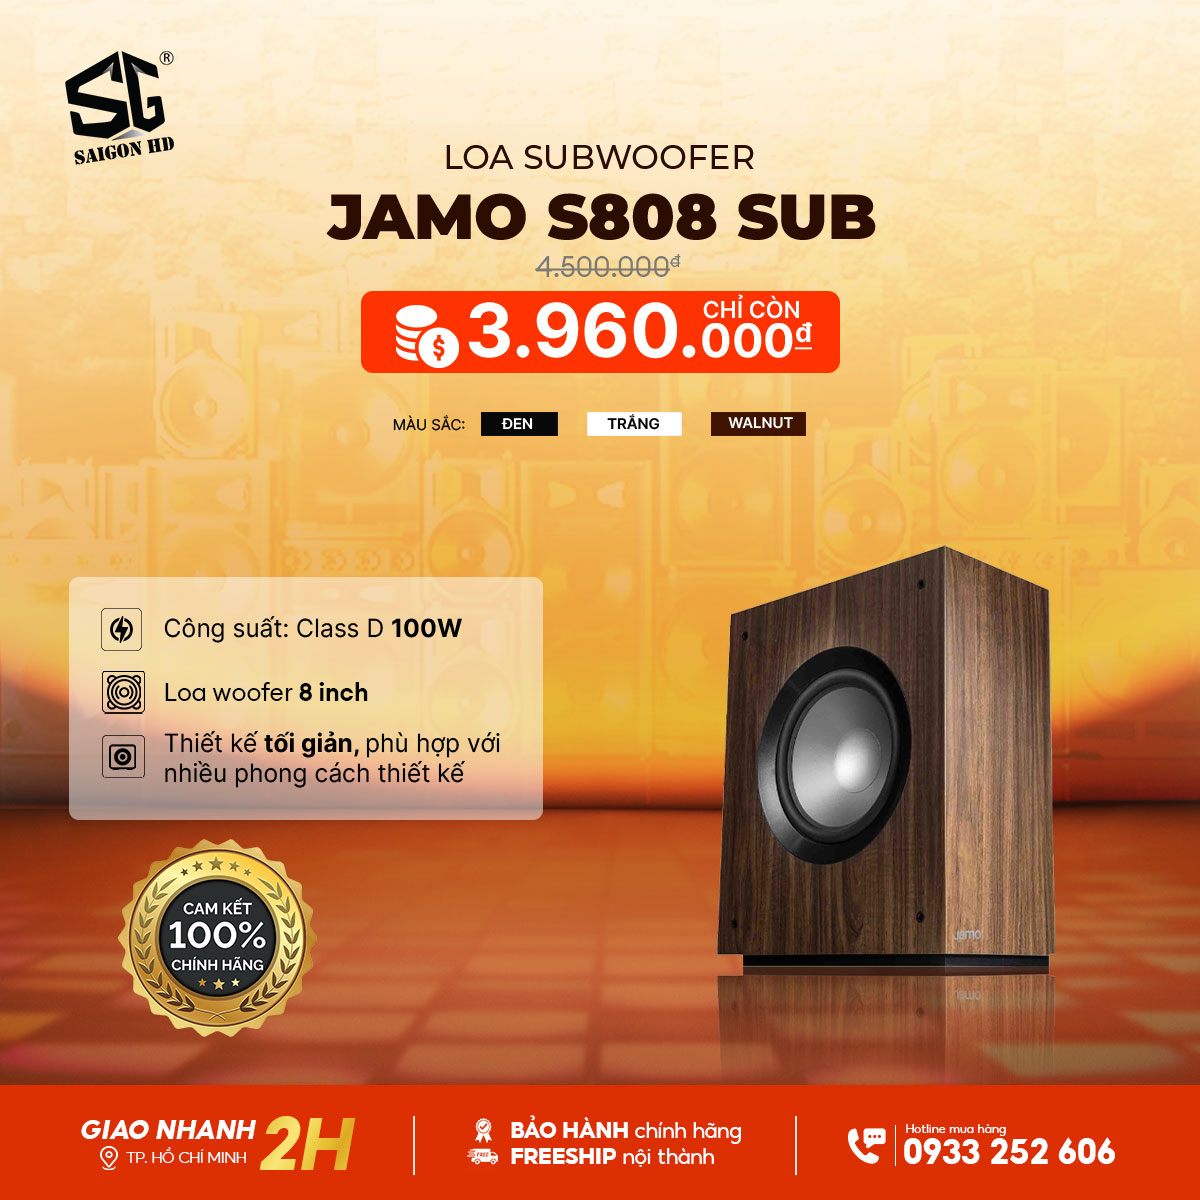 Loa Subwoofer Jamo S808 Sub